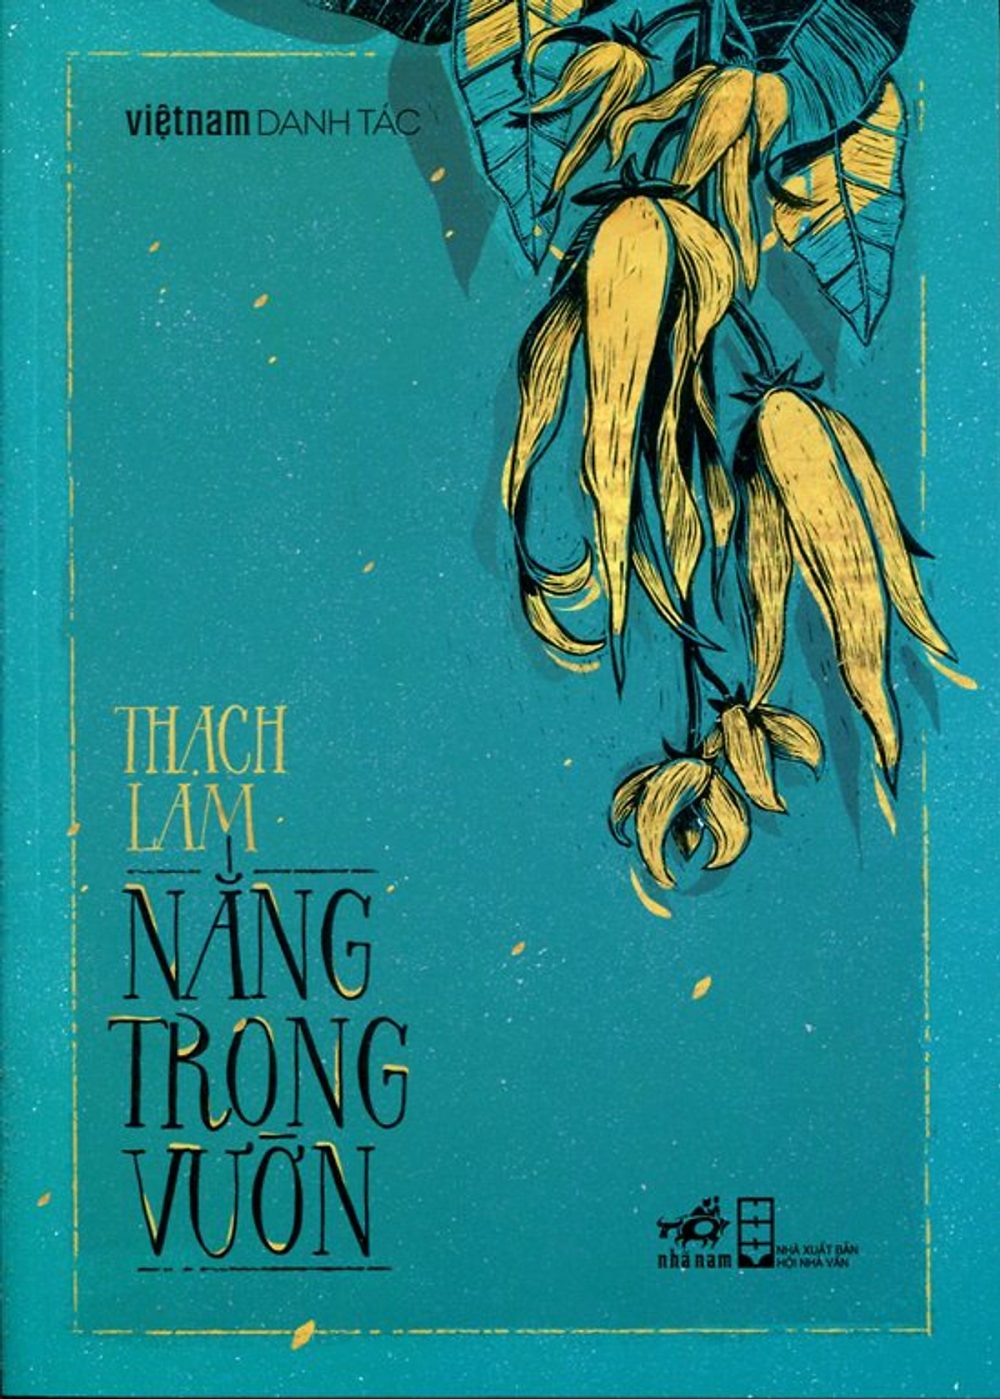 Hình ảnh bìa sách Nắng trong vườn của Thạch Lam.